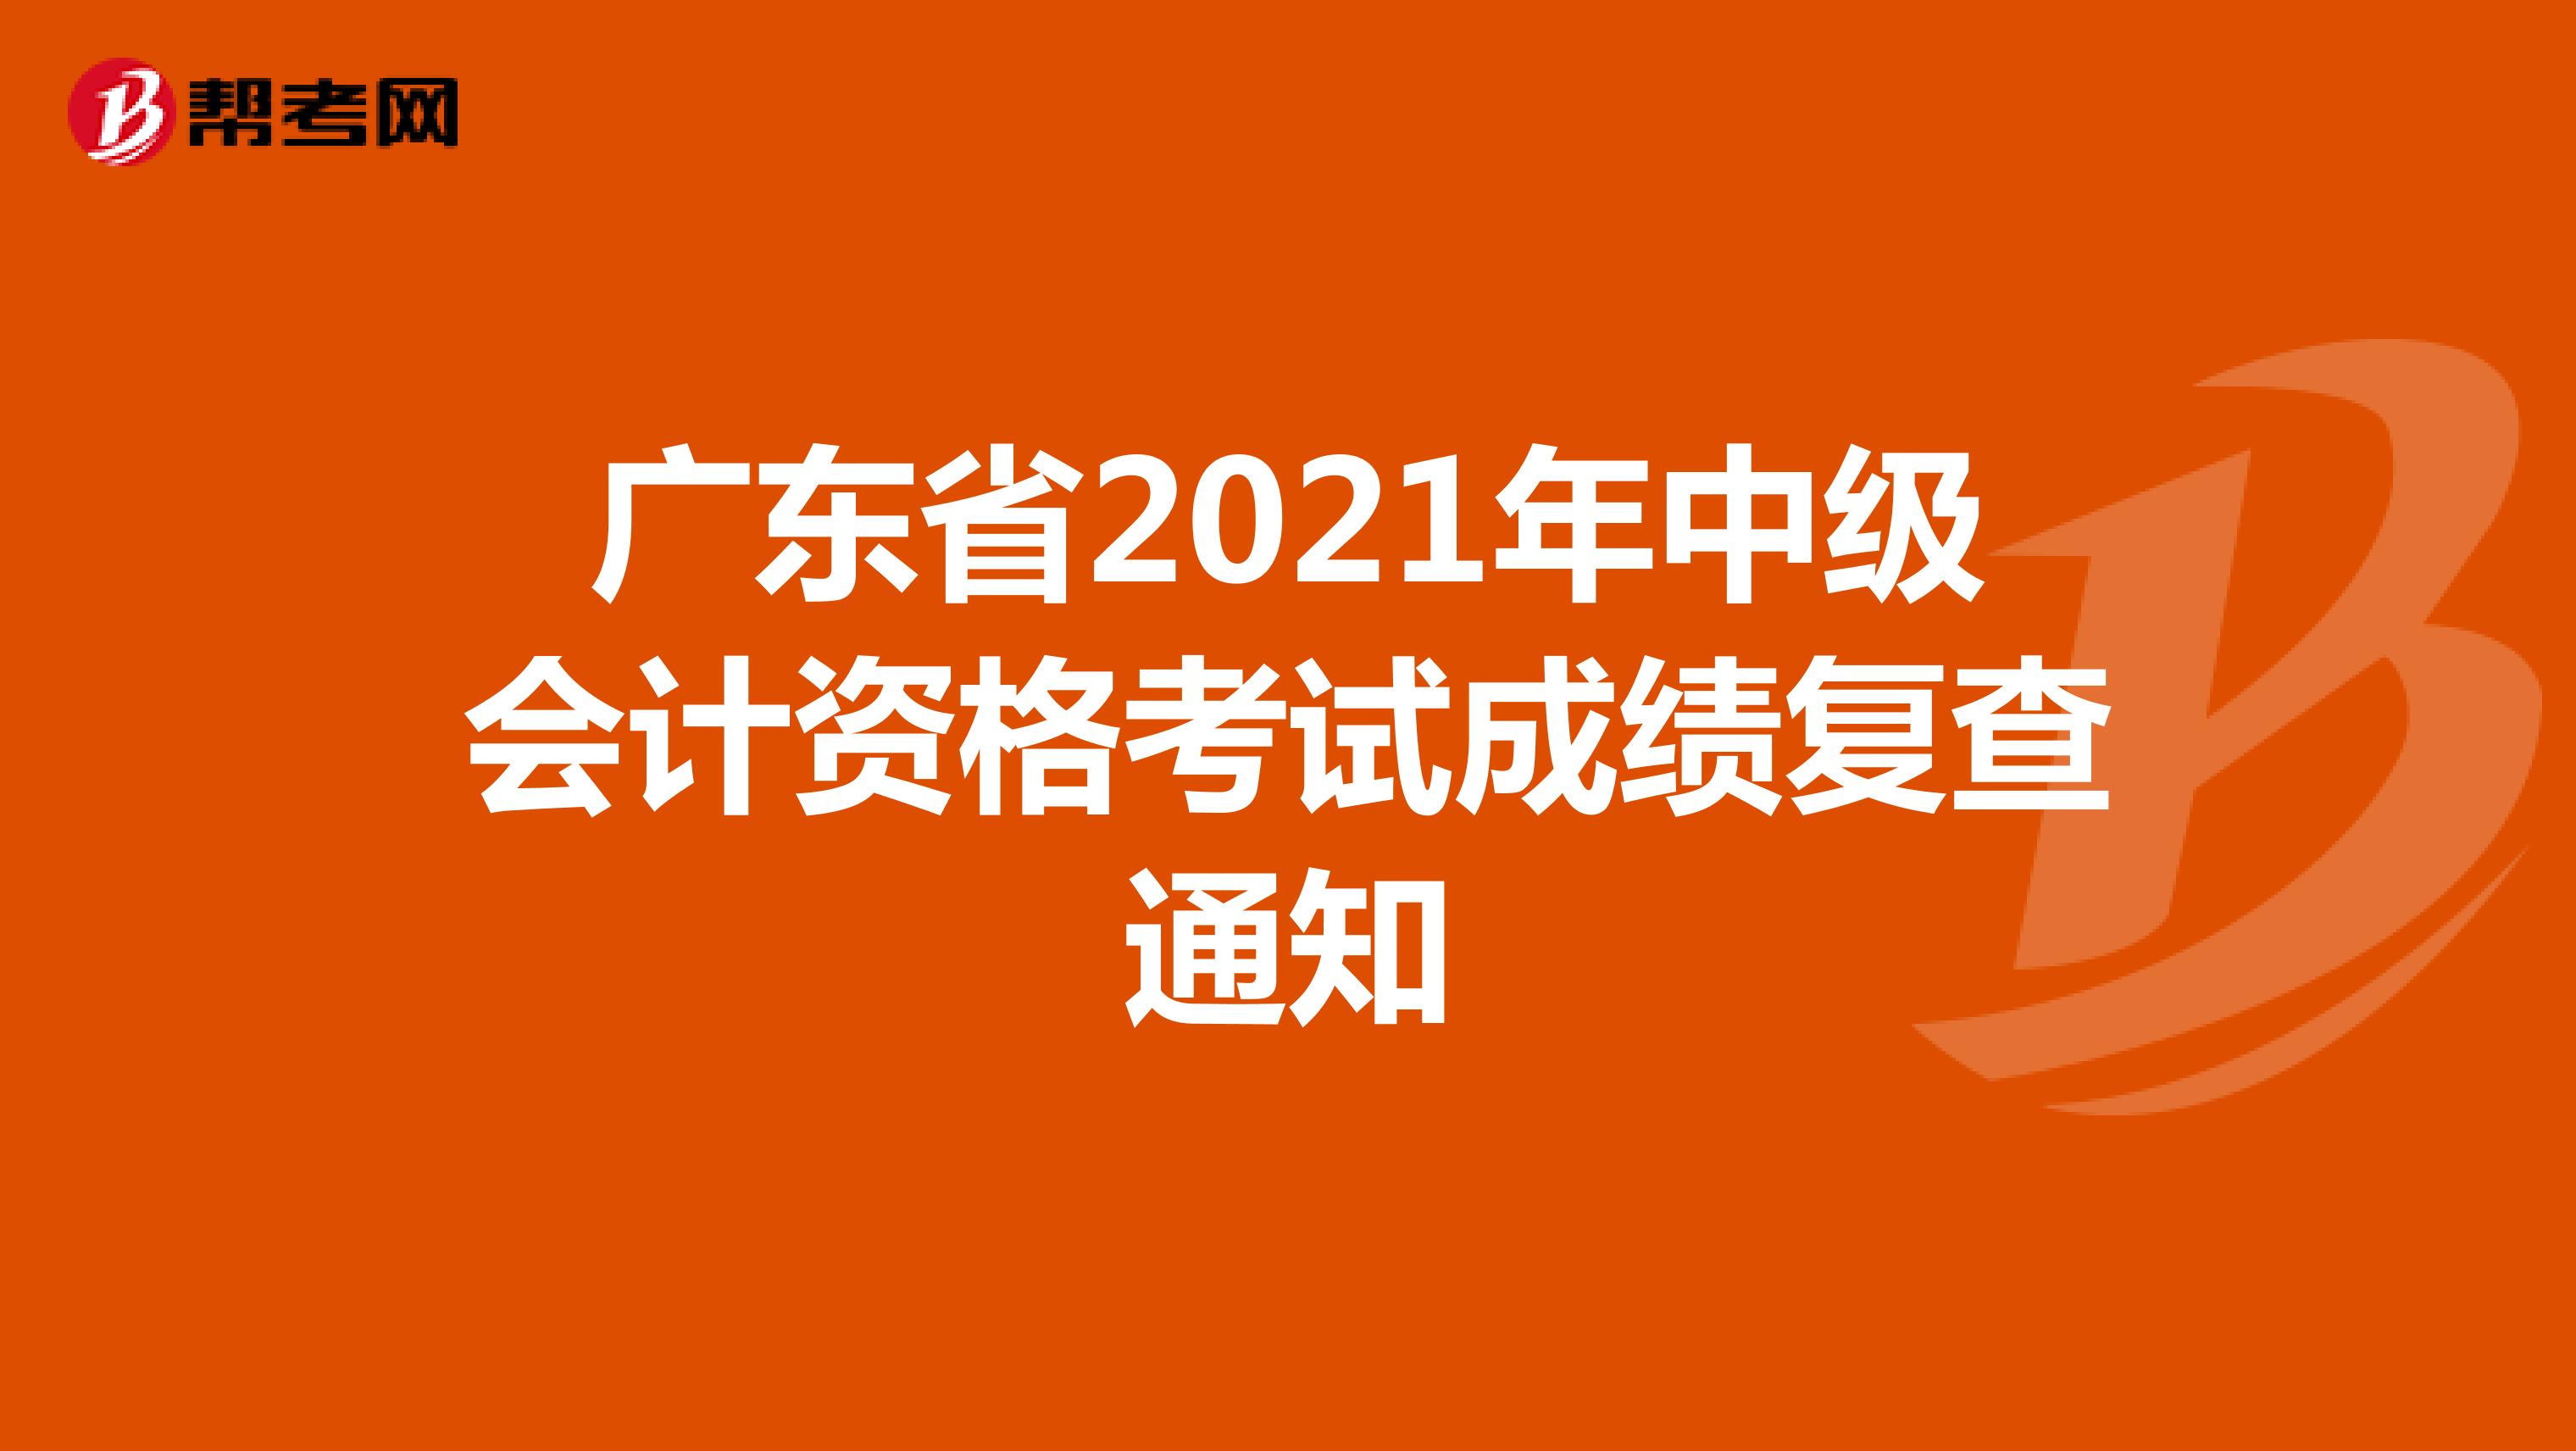 广东省2021年中级会计资格考试成绩复查通知